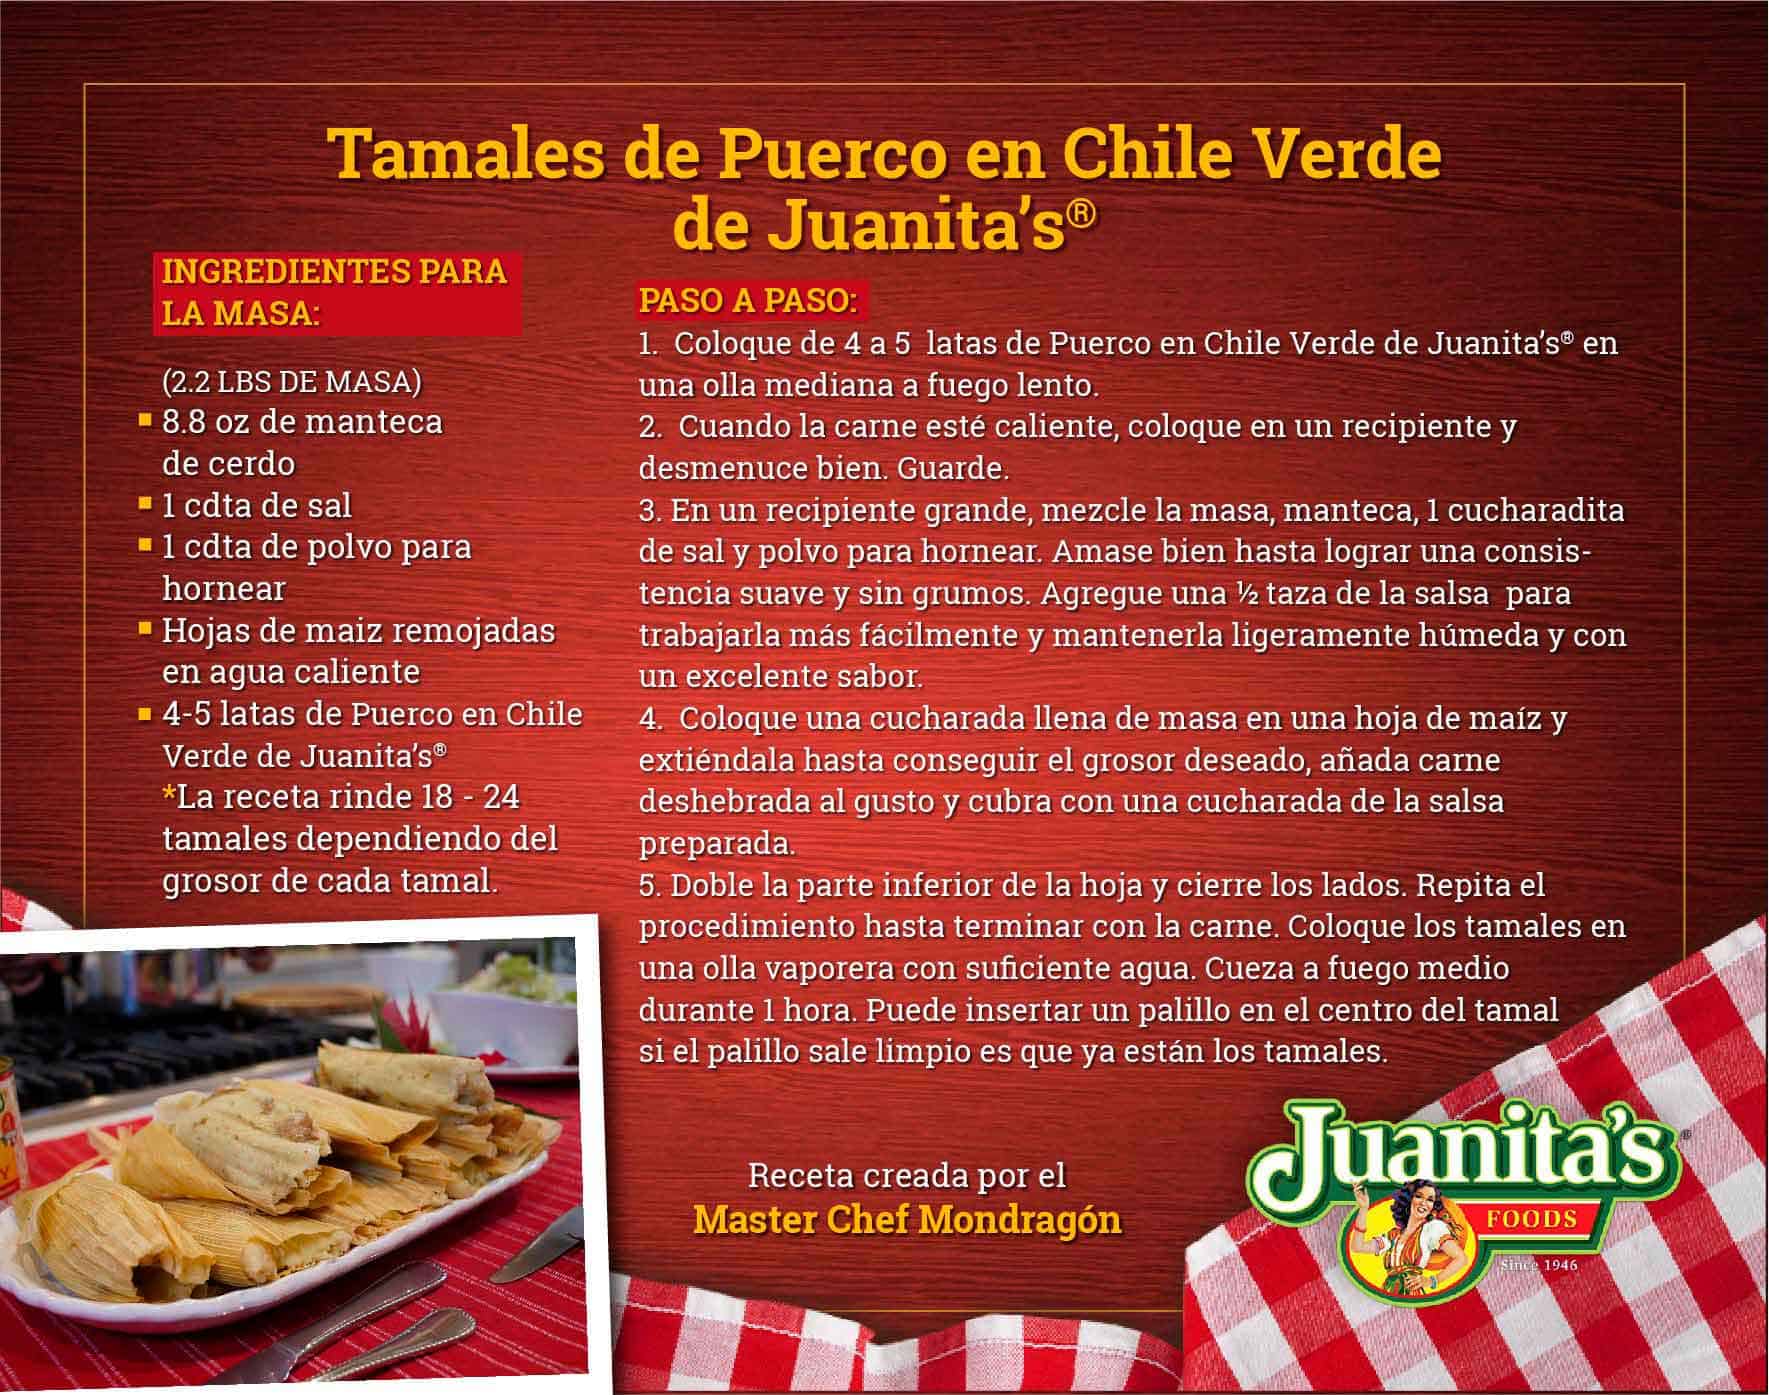 Tamales de Puerco en Chile Verde de Juanita's | Juanita's Foods